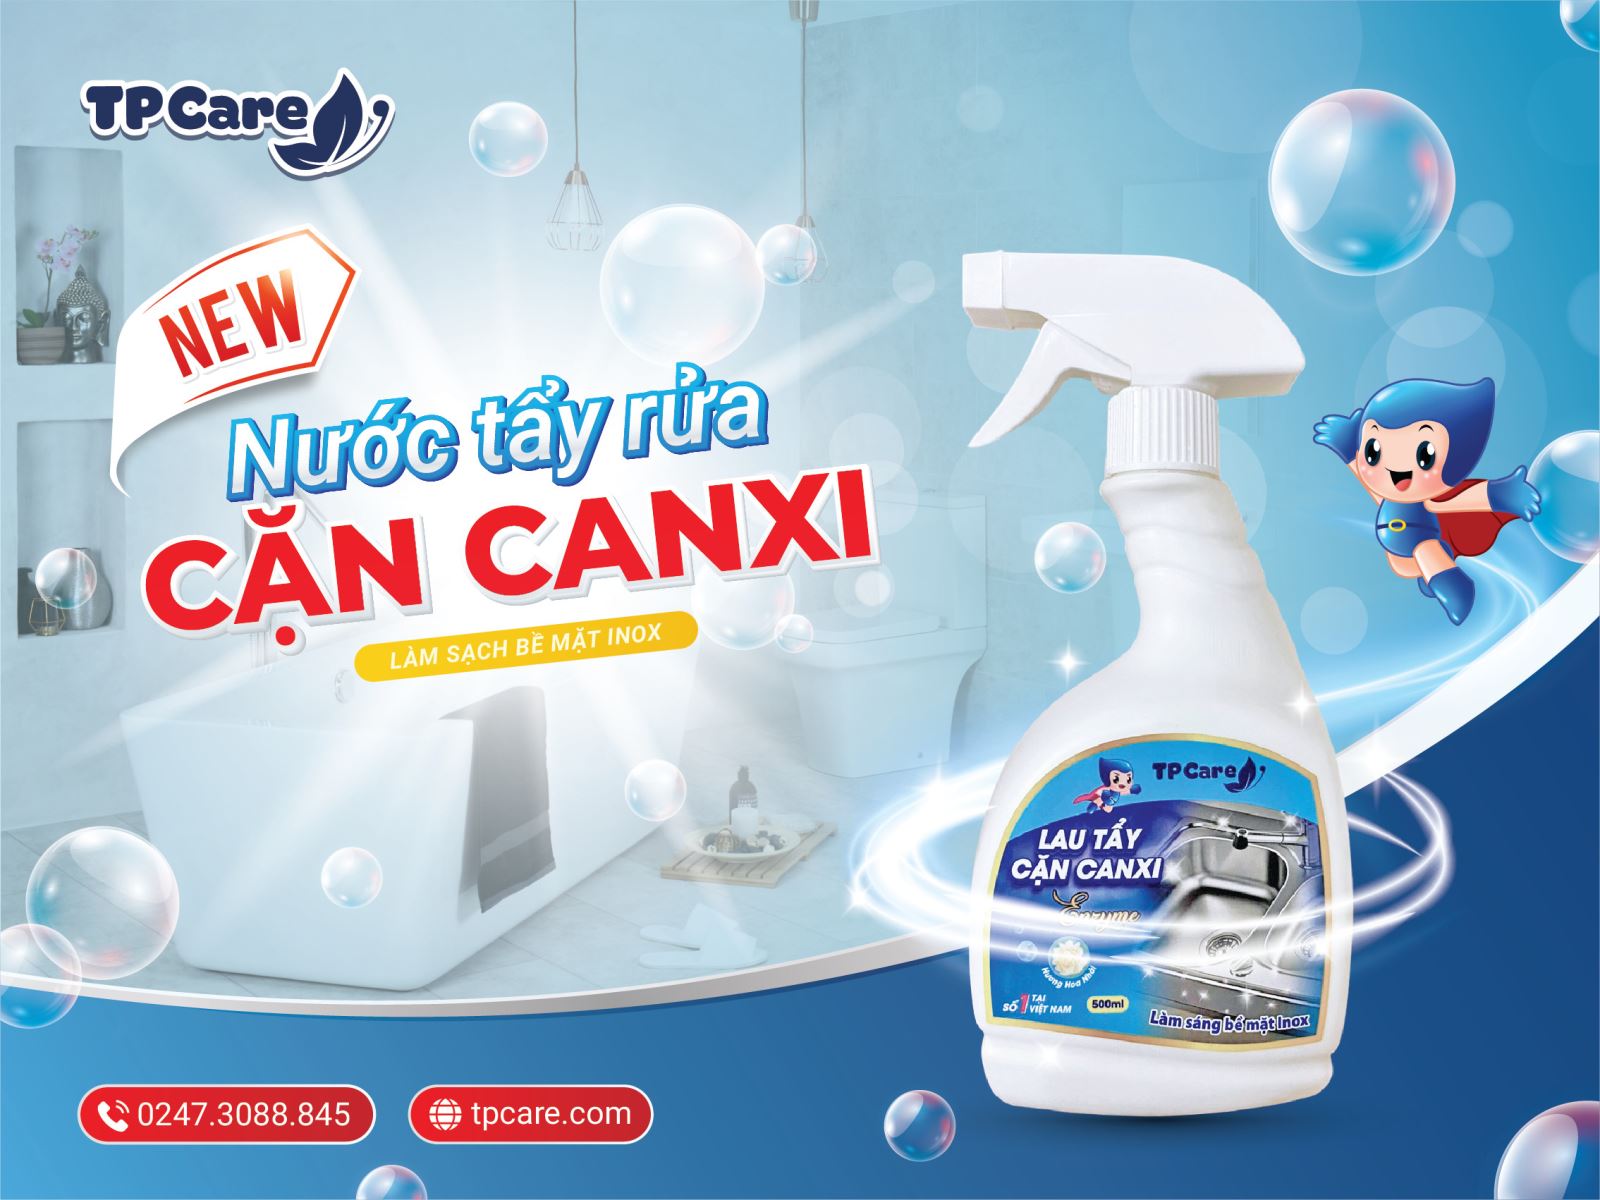 Thông báo ra mắt nước tẩy rửa rửa cặn Canxi TPCare mới